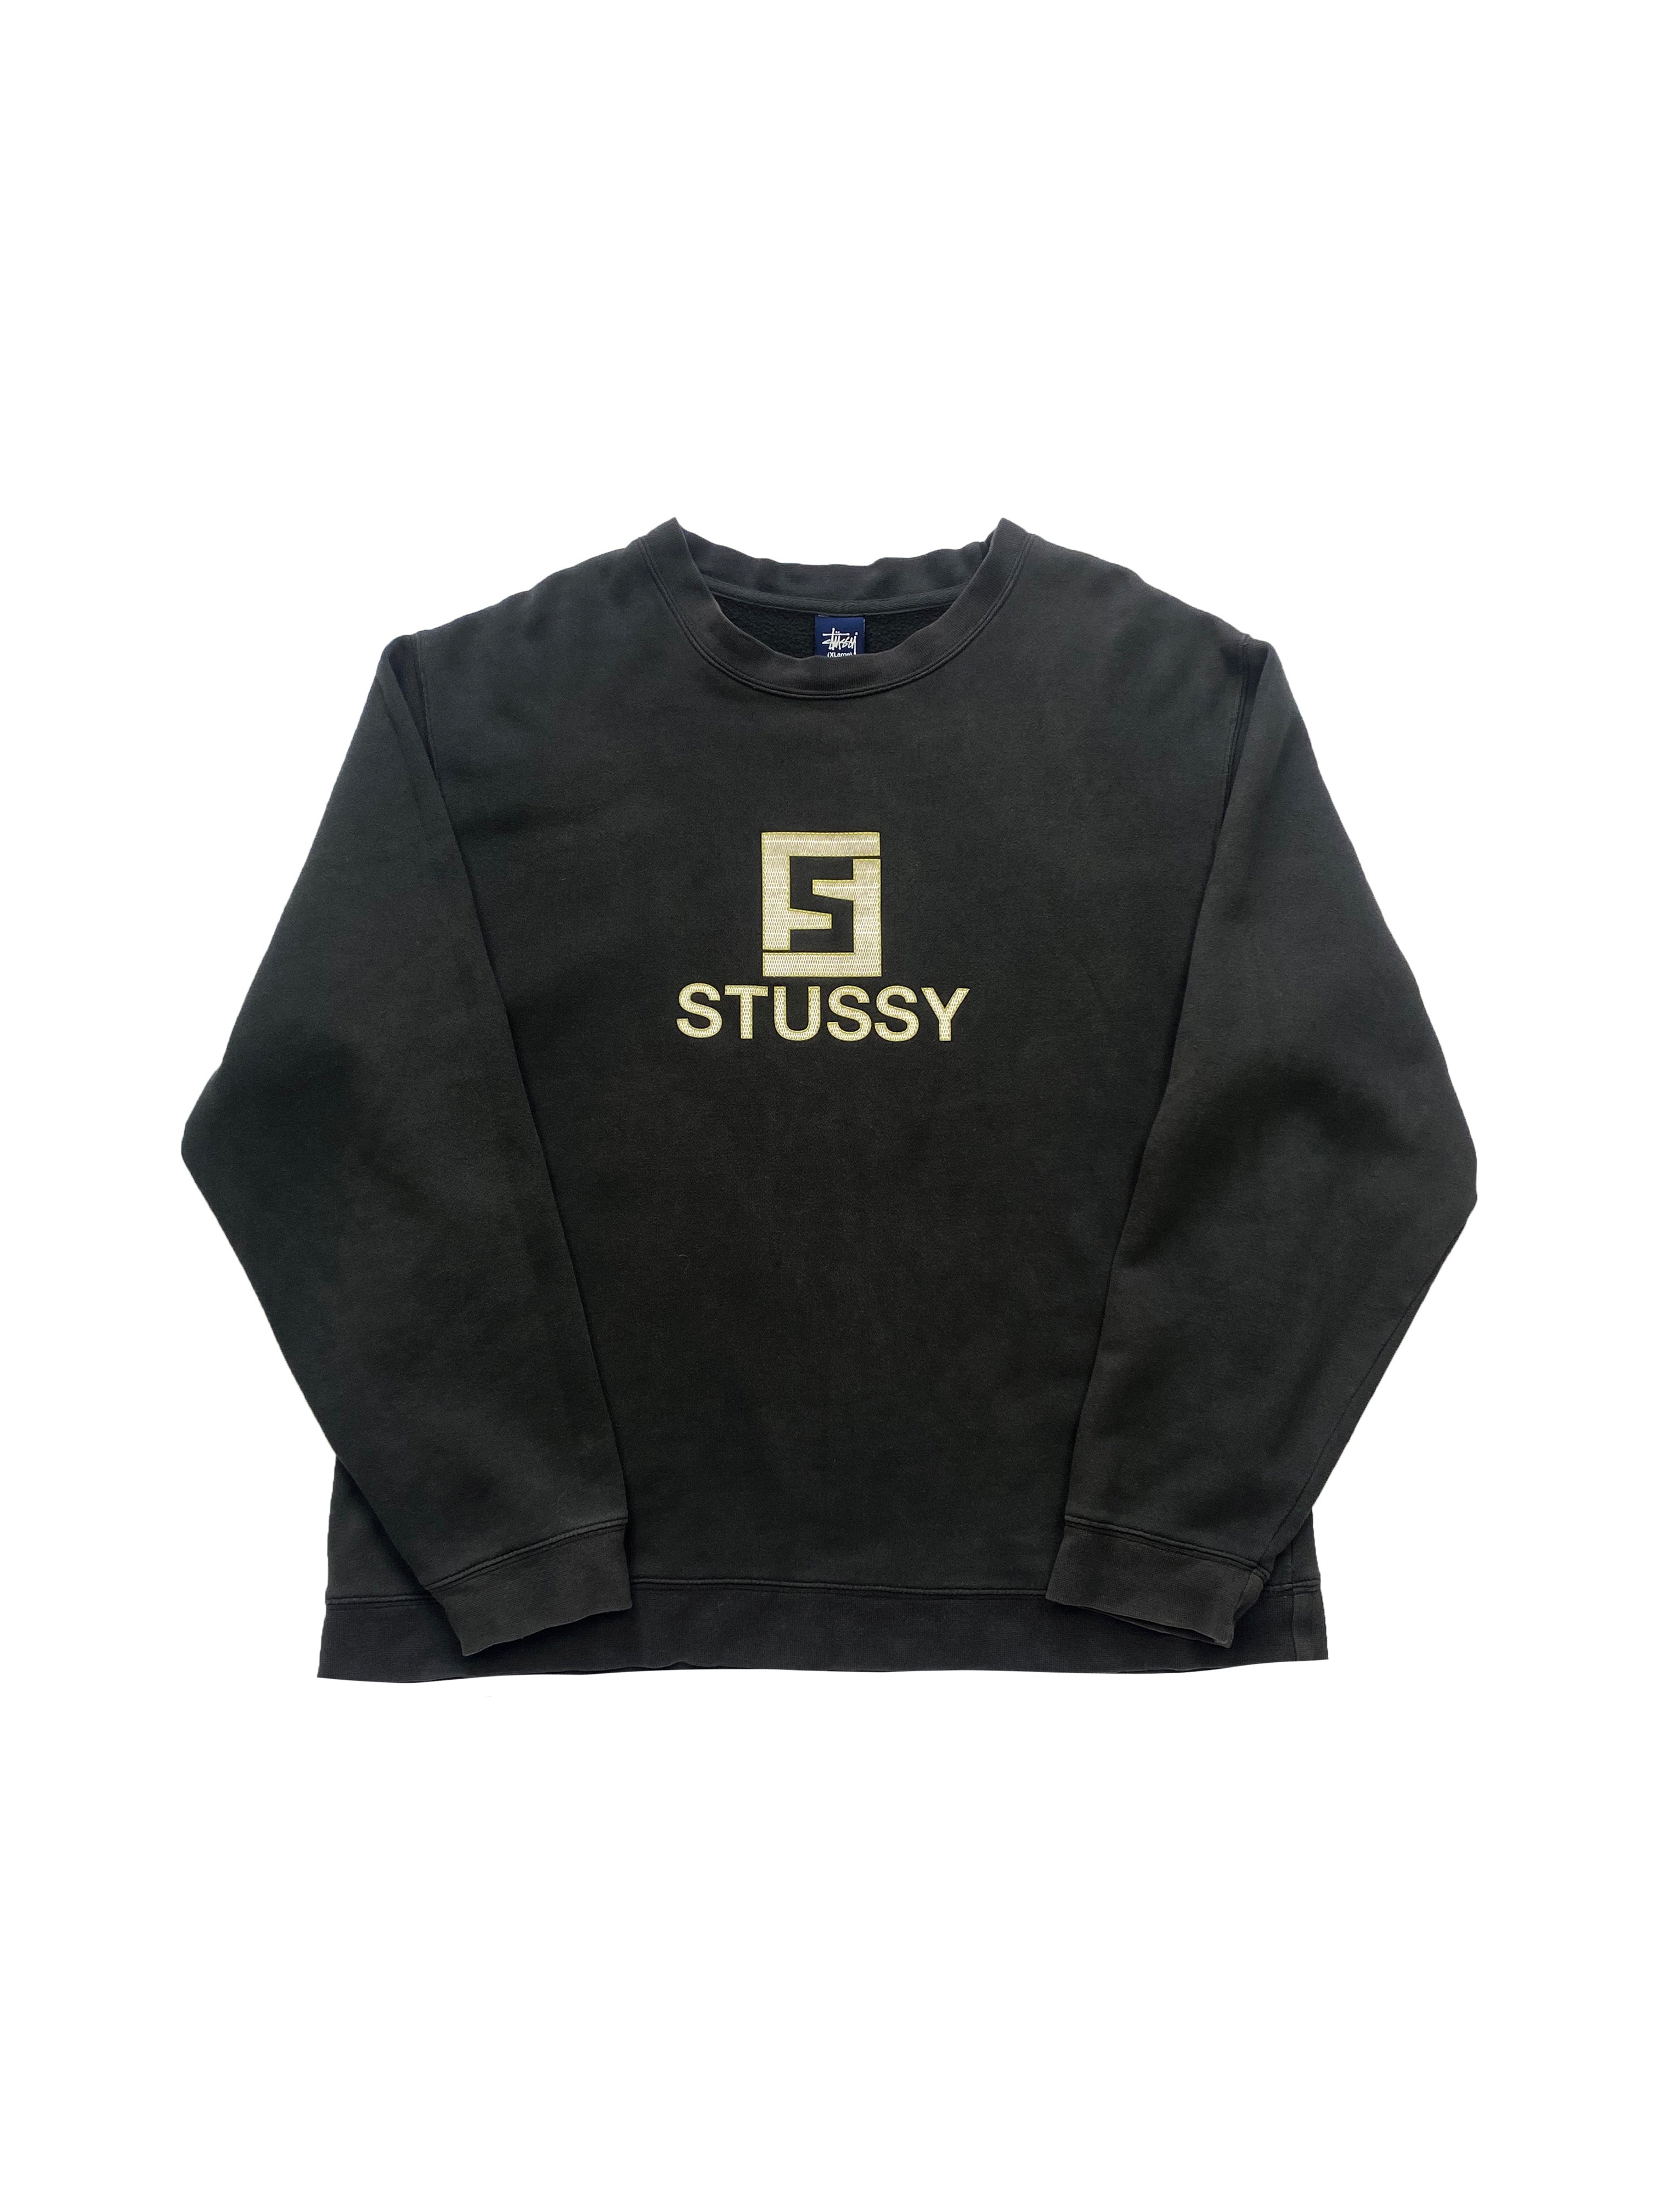 Stussy 'Fendi' Navy Sweatshirt 00's